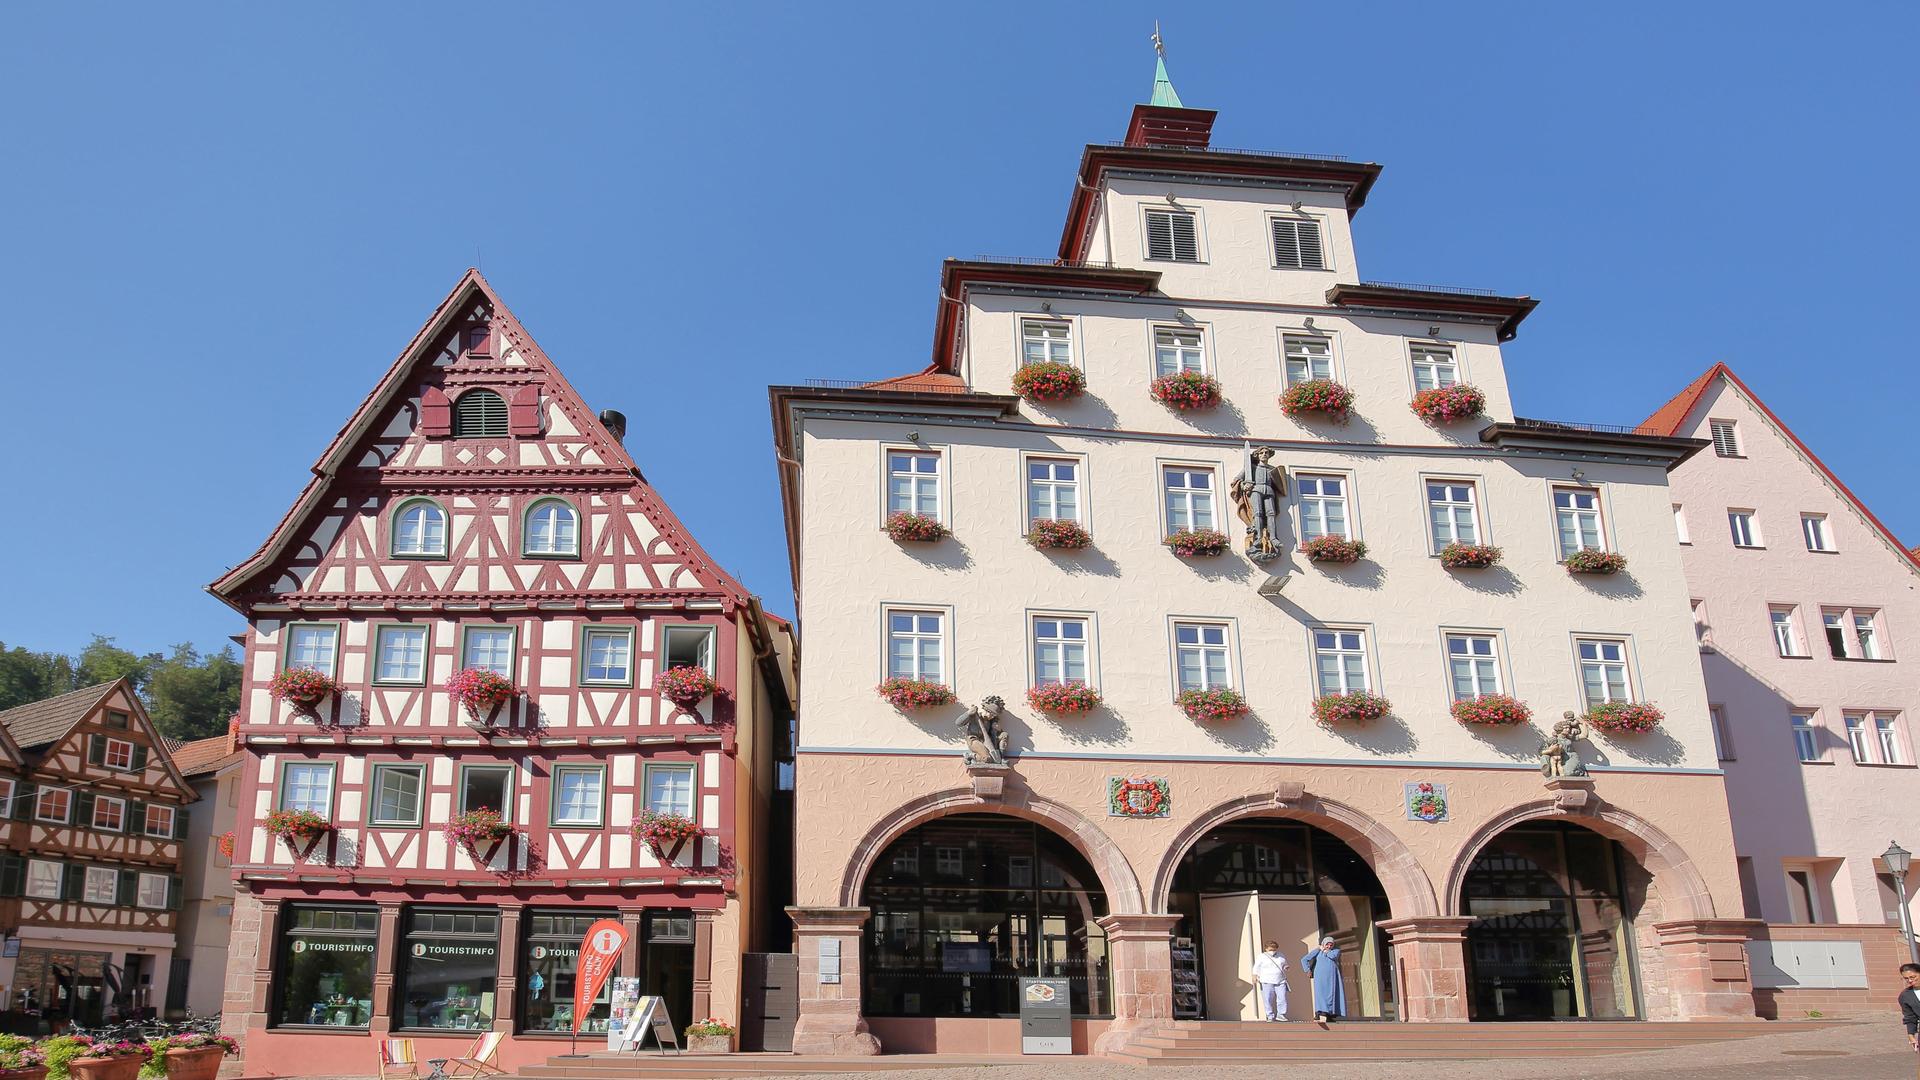 Blick auf ein Fachwerkhaus mit Touristinformation und Rathaus am Marktplatz in Calw im Nordschwarzwald, Baden-Württemberg